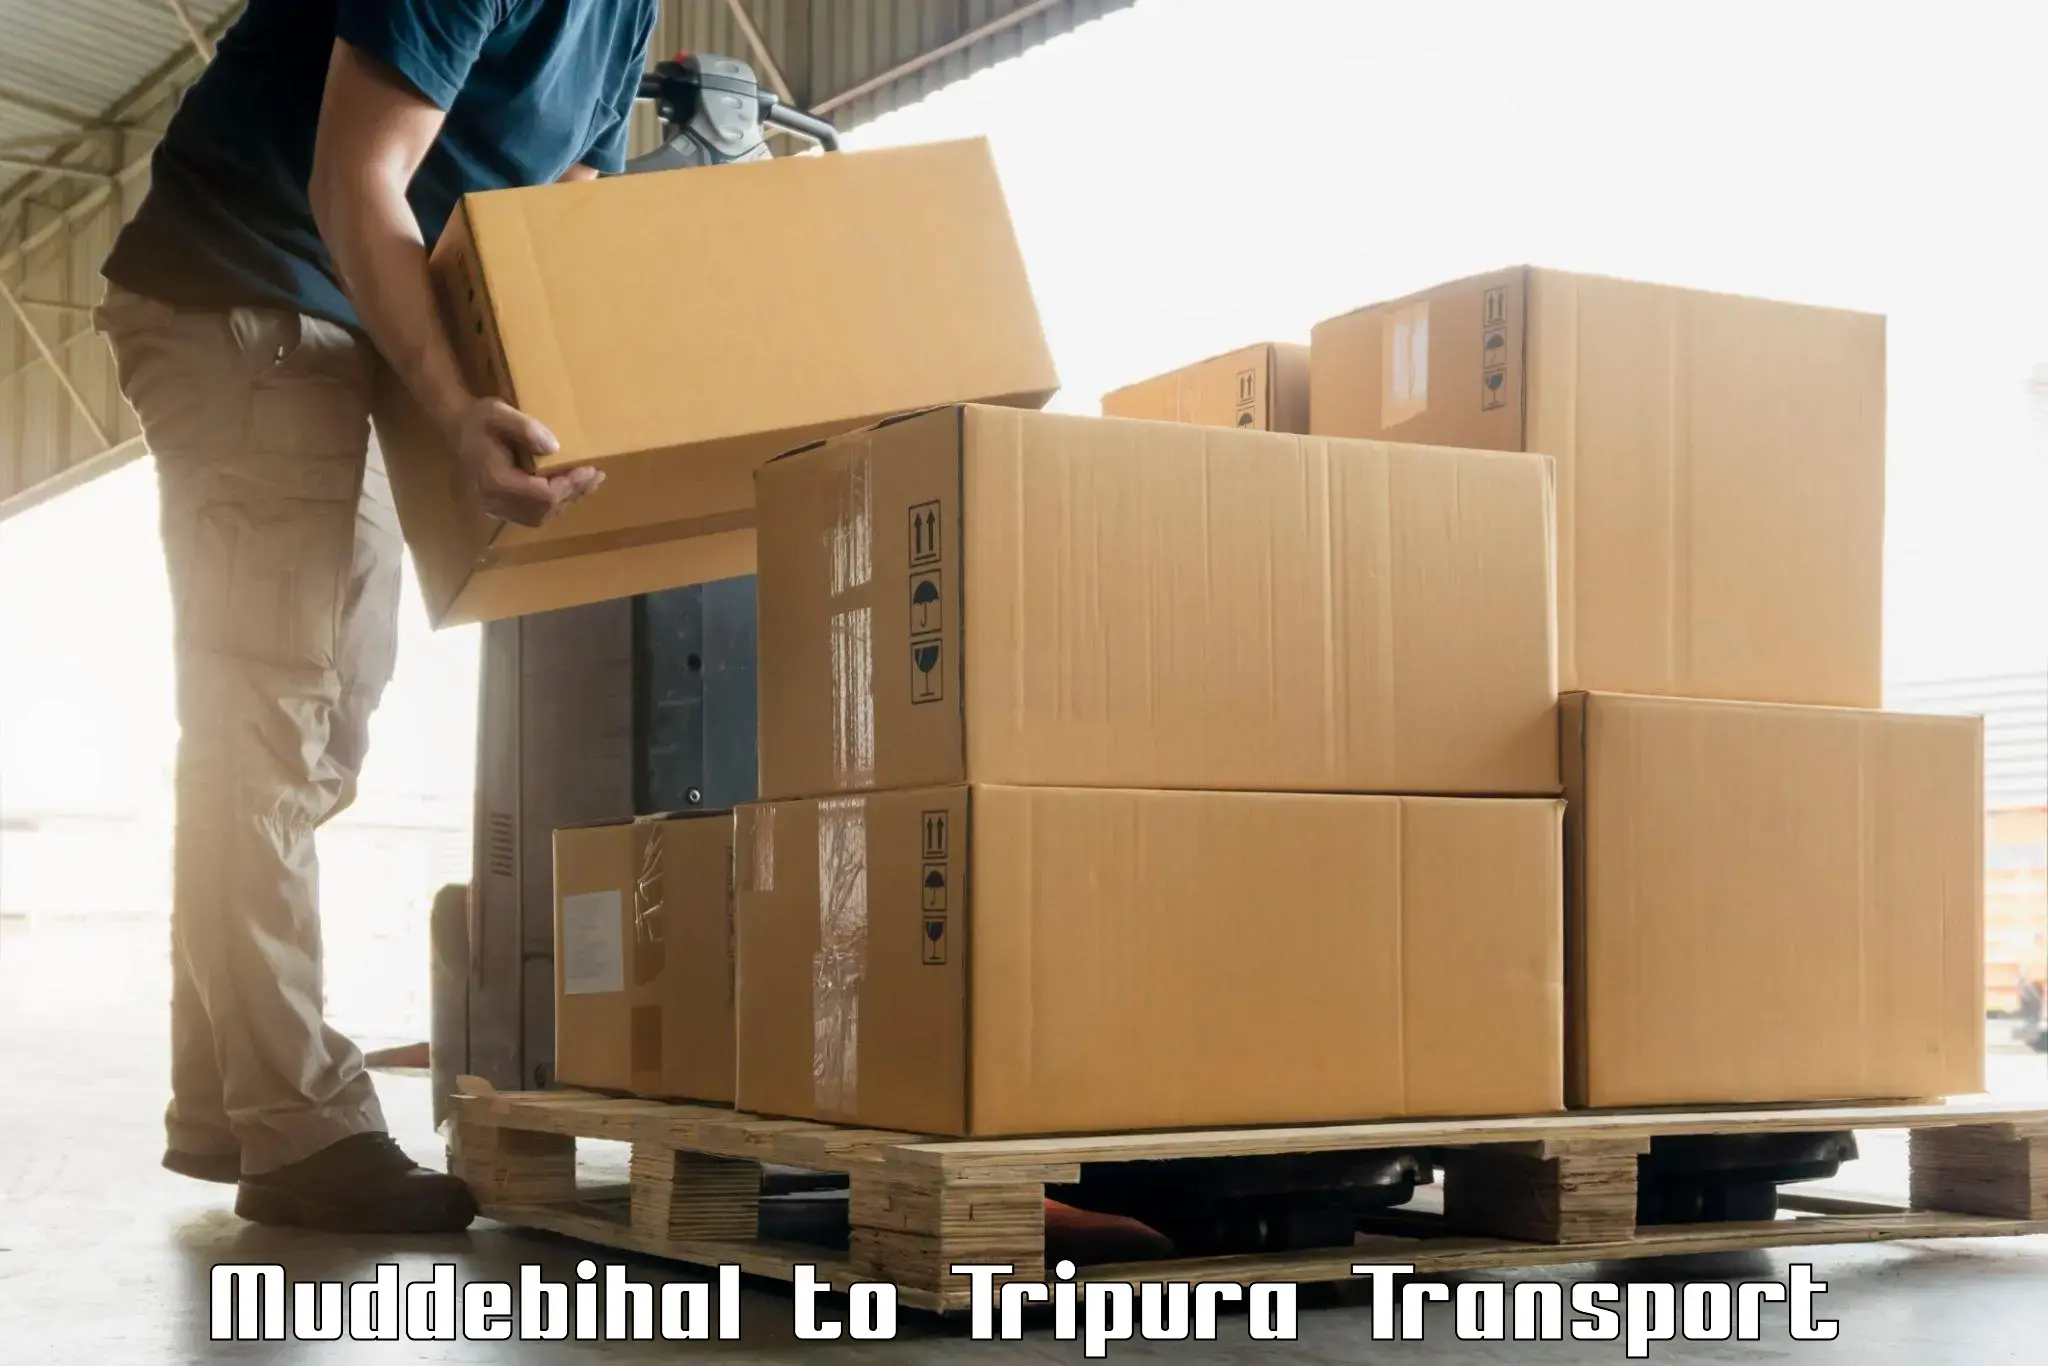 Cargo transport services Muddebihal to Ambassa